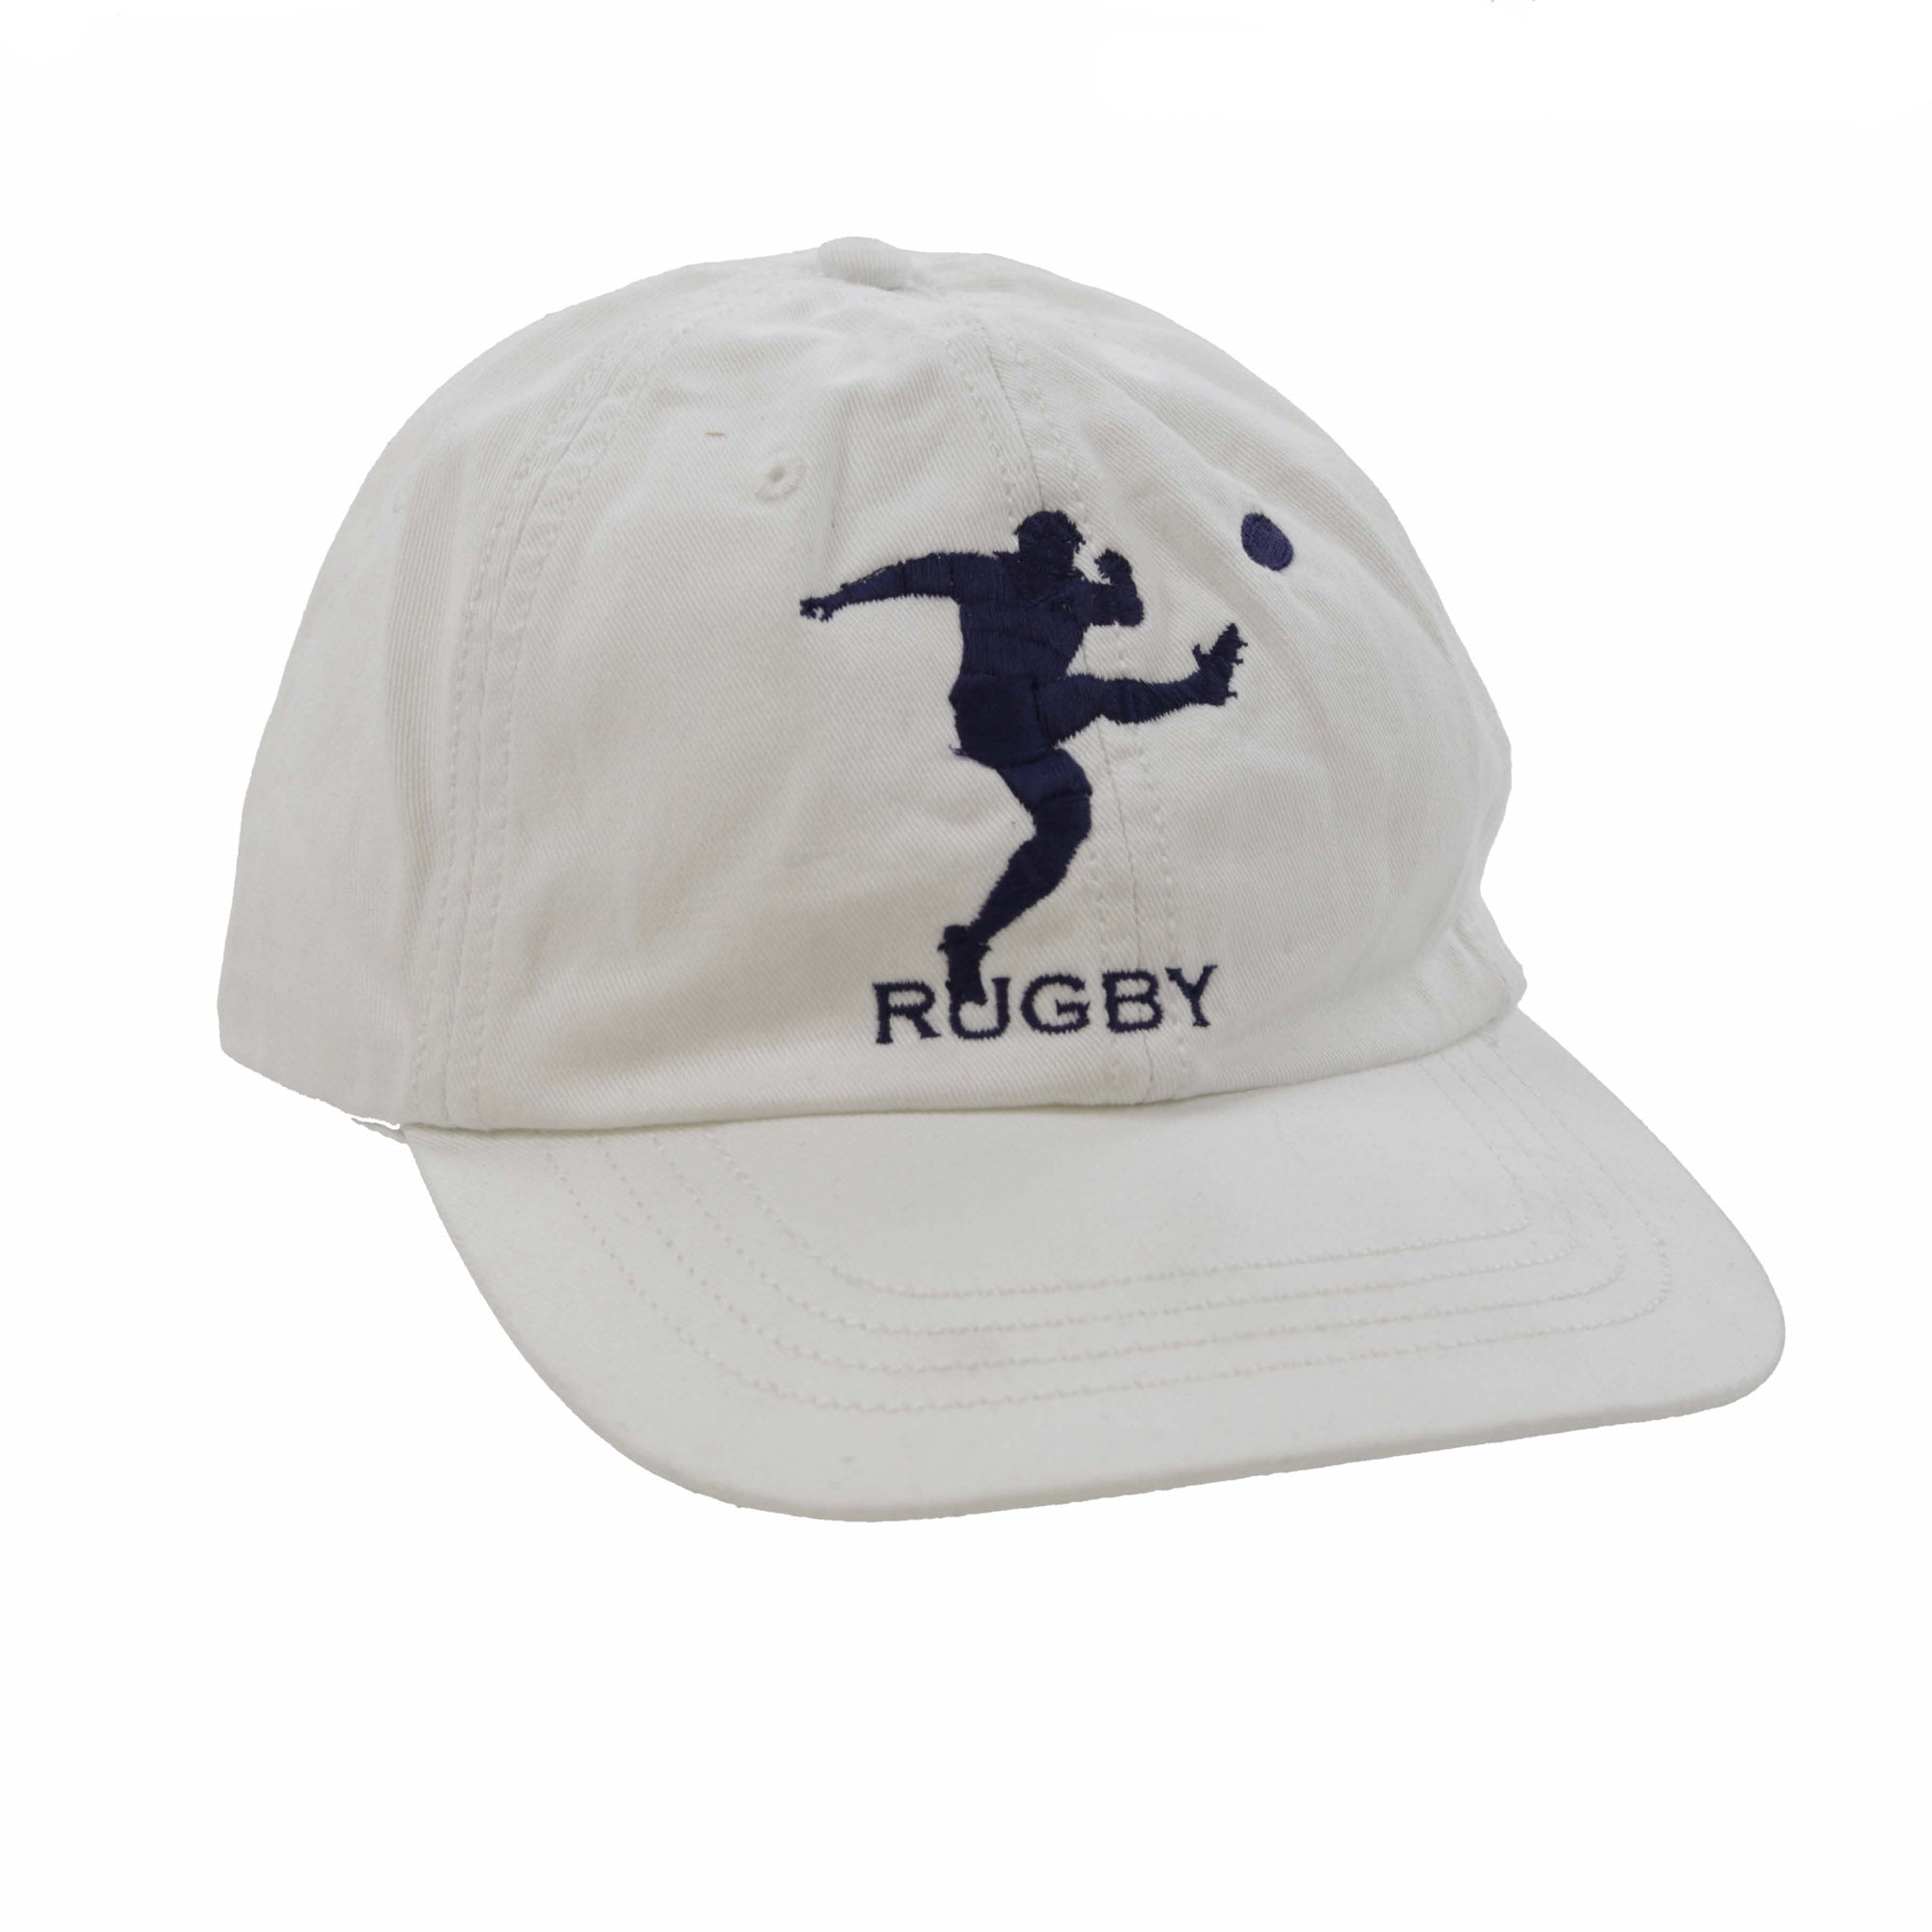 RUGBY MAN CAP // WHITE NAVY